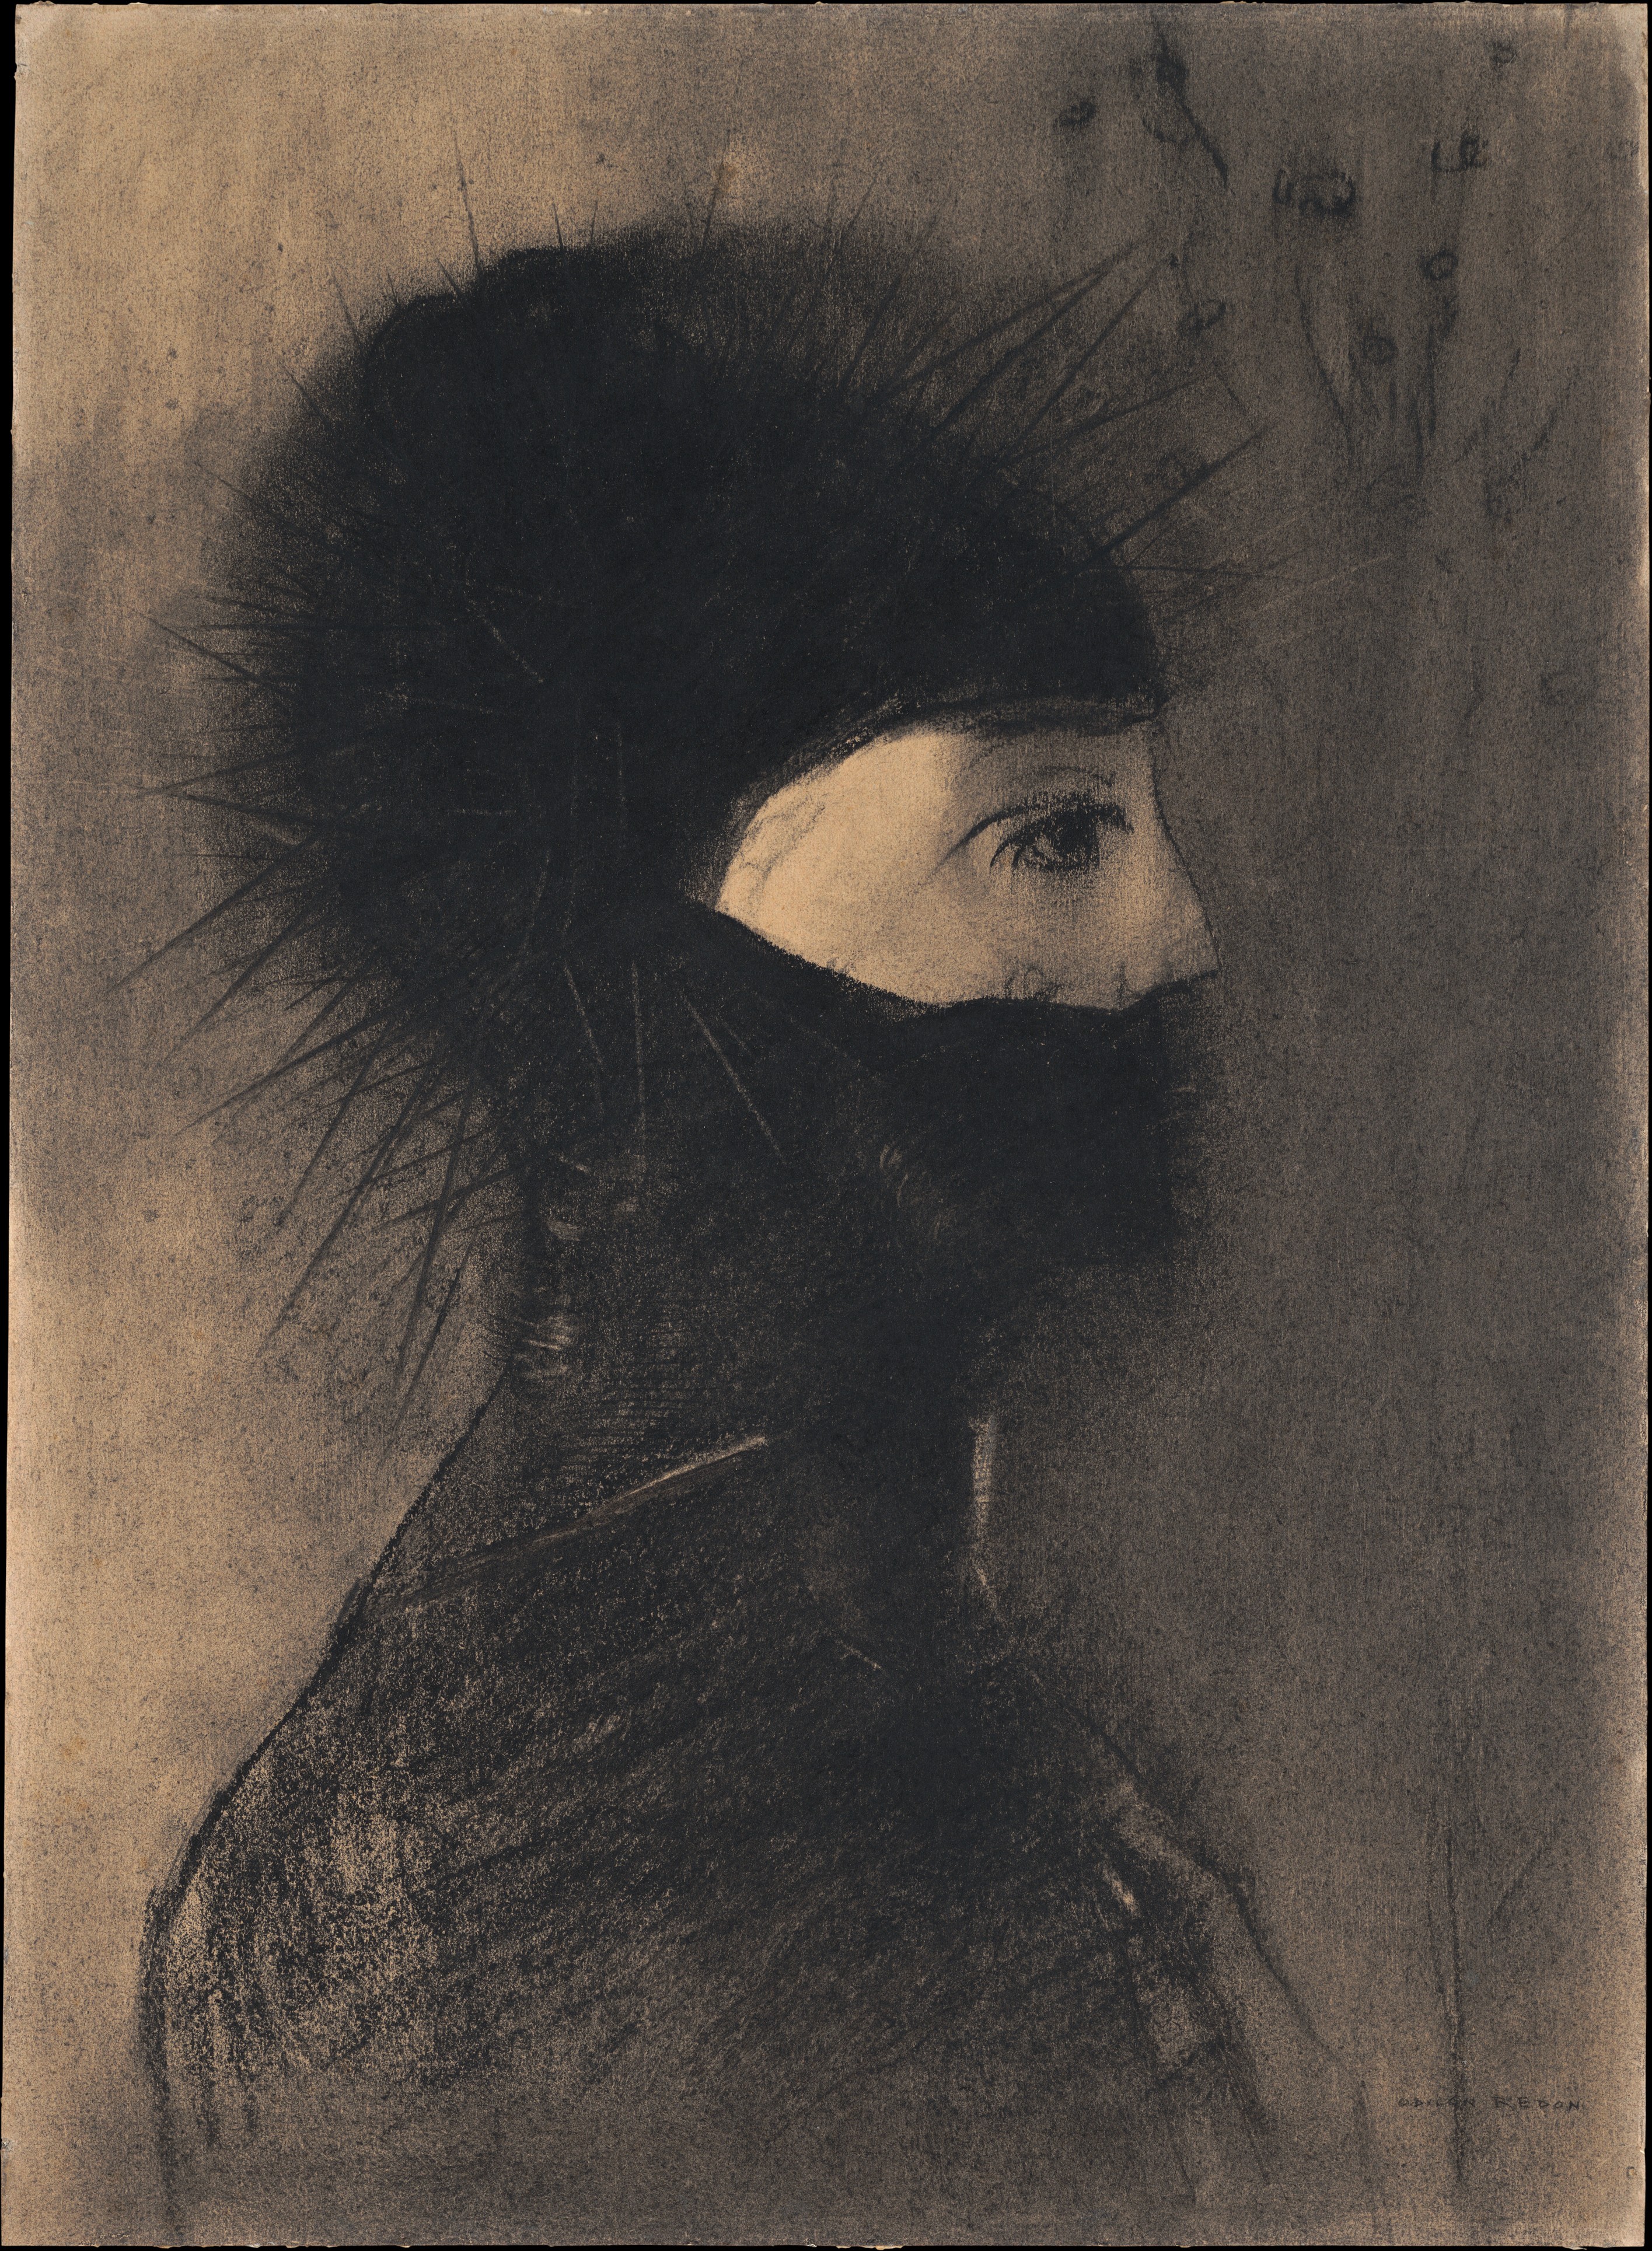 Zbroja by Odilon Redon - 1891 - 50.7 x 36.8 cm 